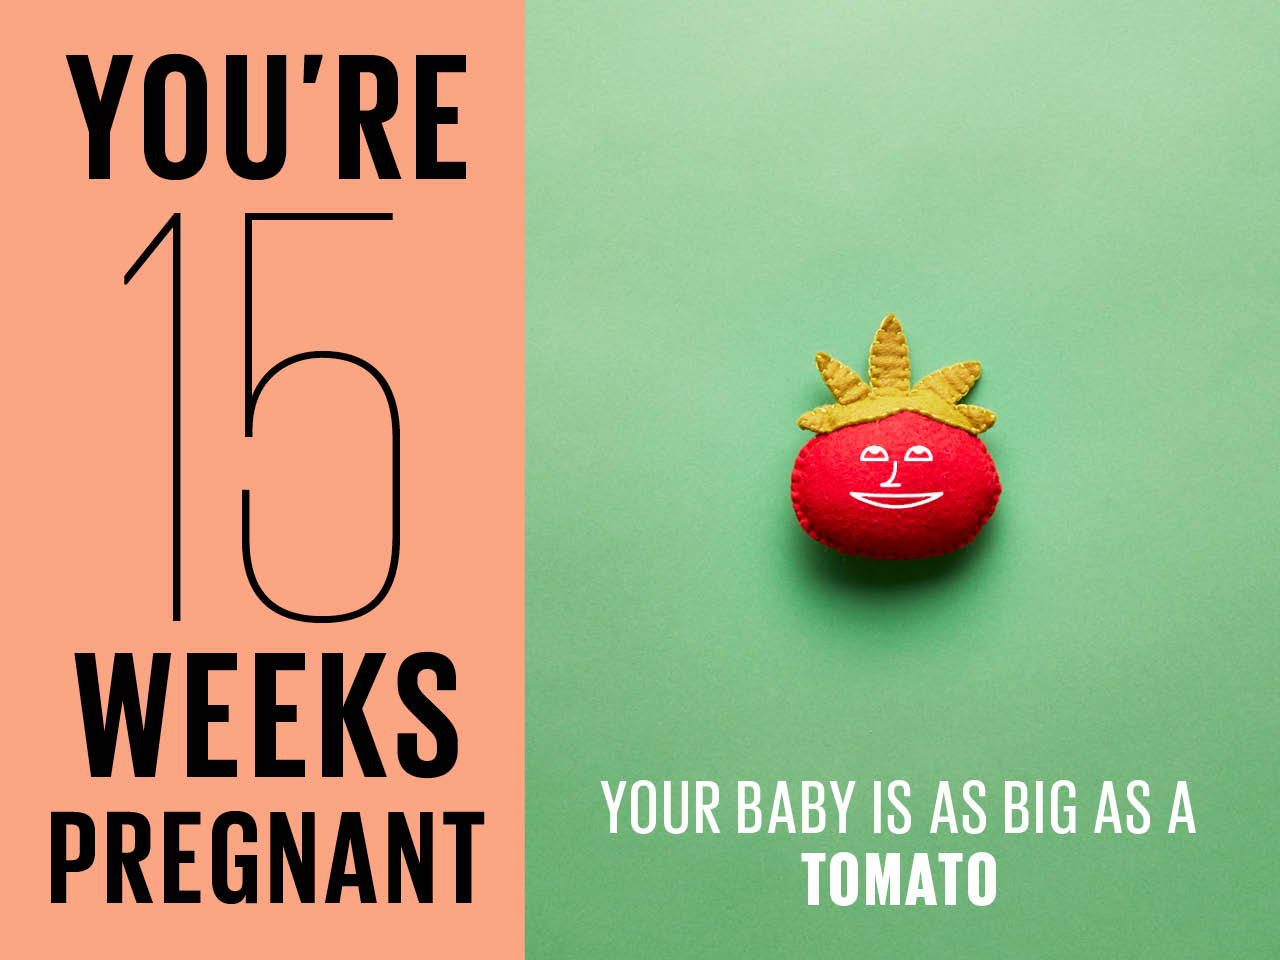 Kích thước thai nhi tuần 15 to như 1 trái cà chua